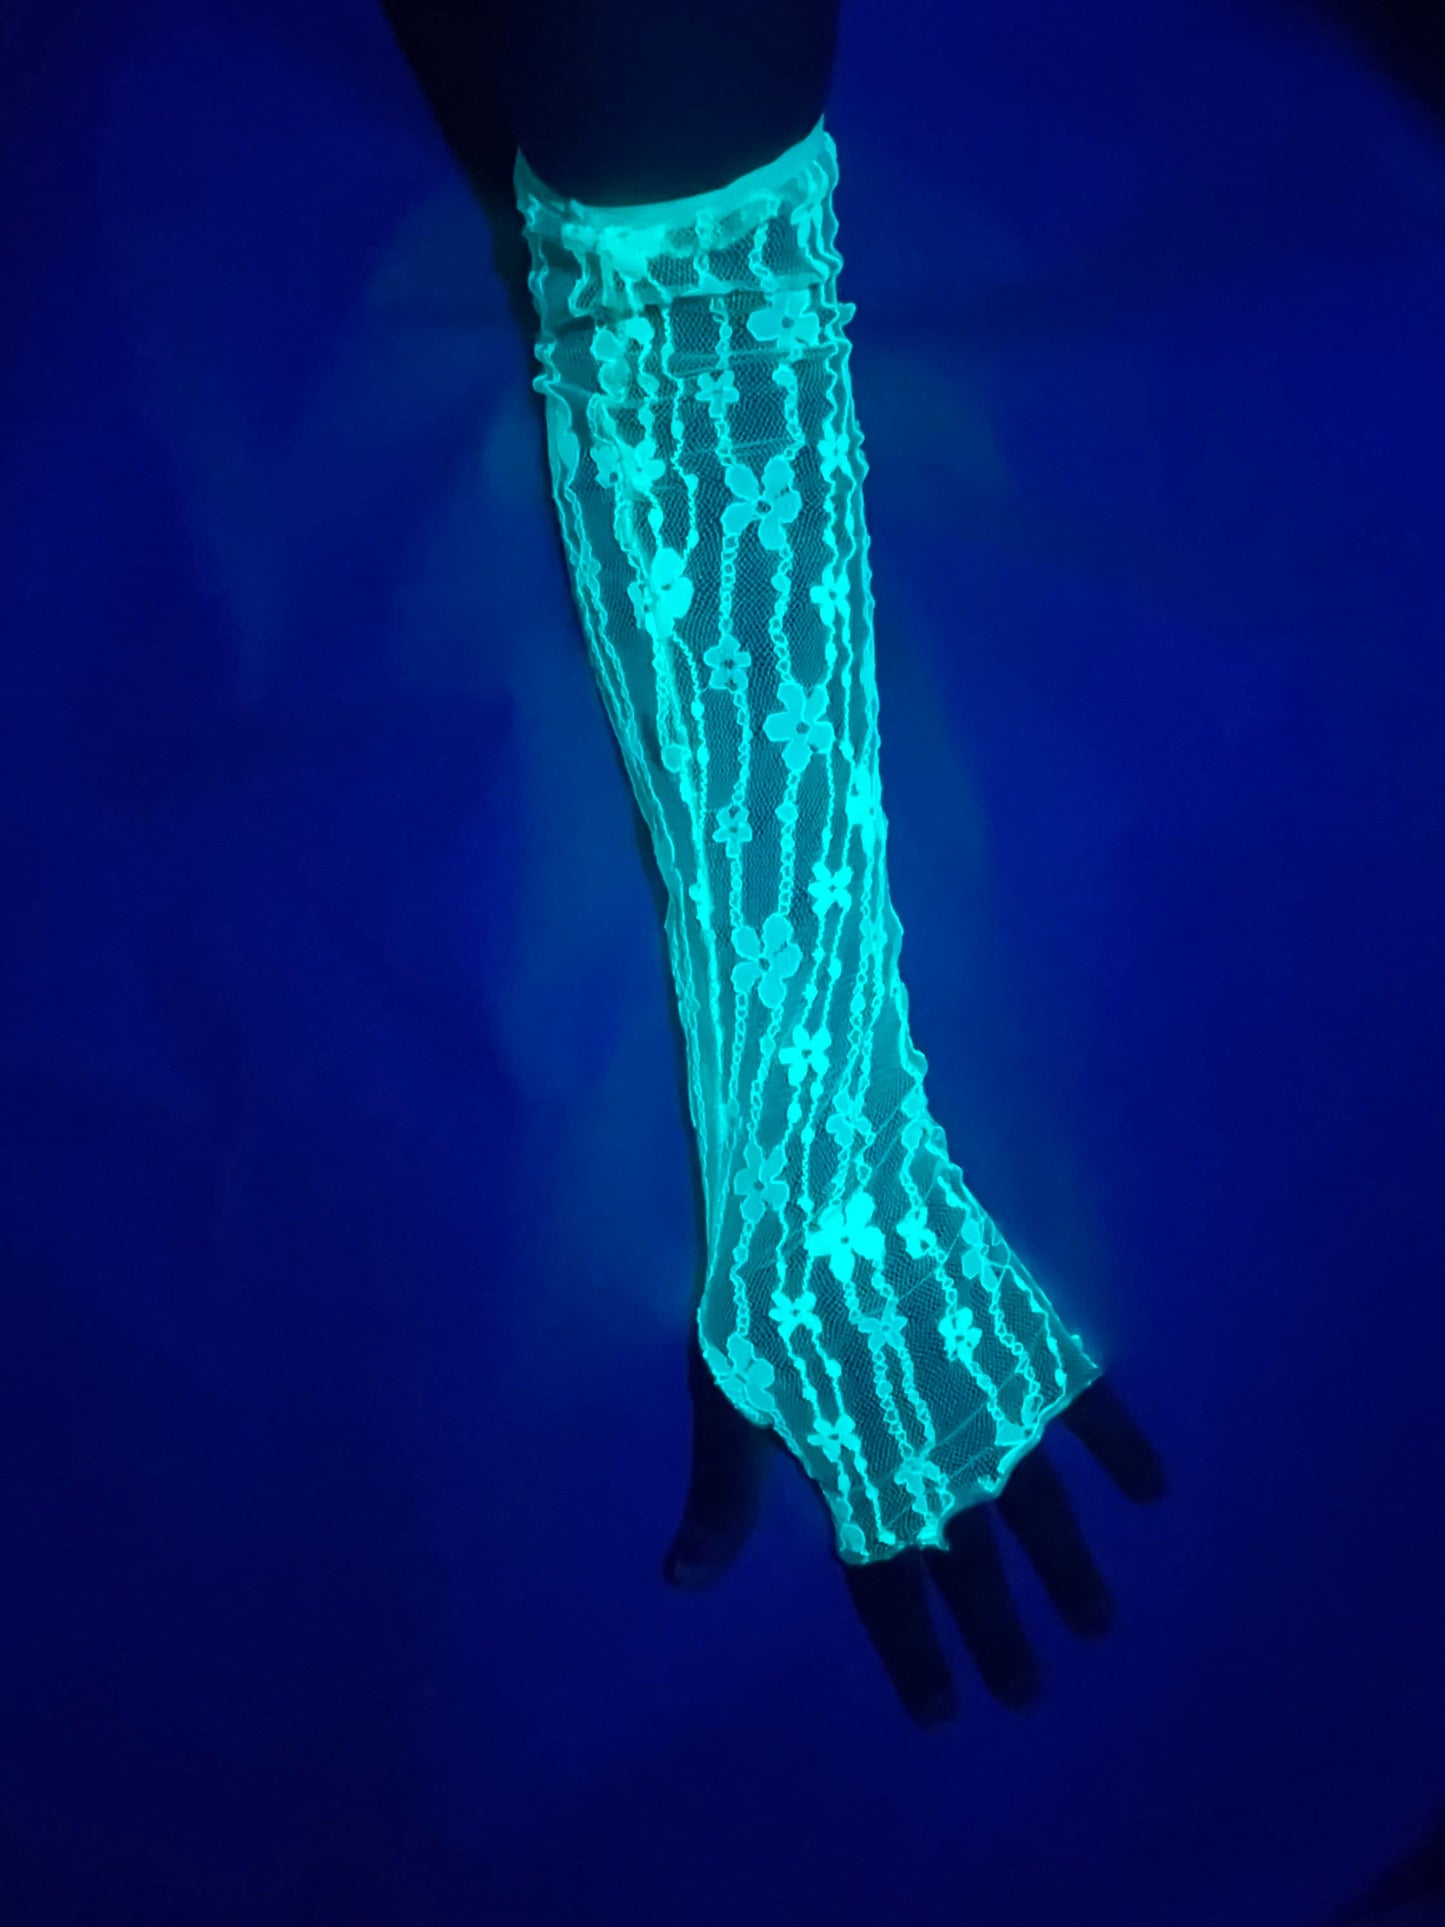 UV reactive arm sleeves, Neon flower pattern arm sleeves, Fluorescent mesh sleeves, Glow in the dark sleeves, Rave arm sleeves